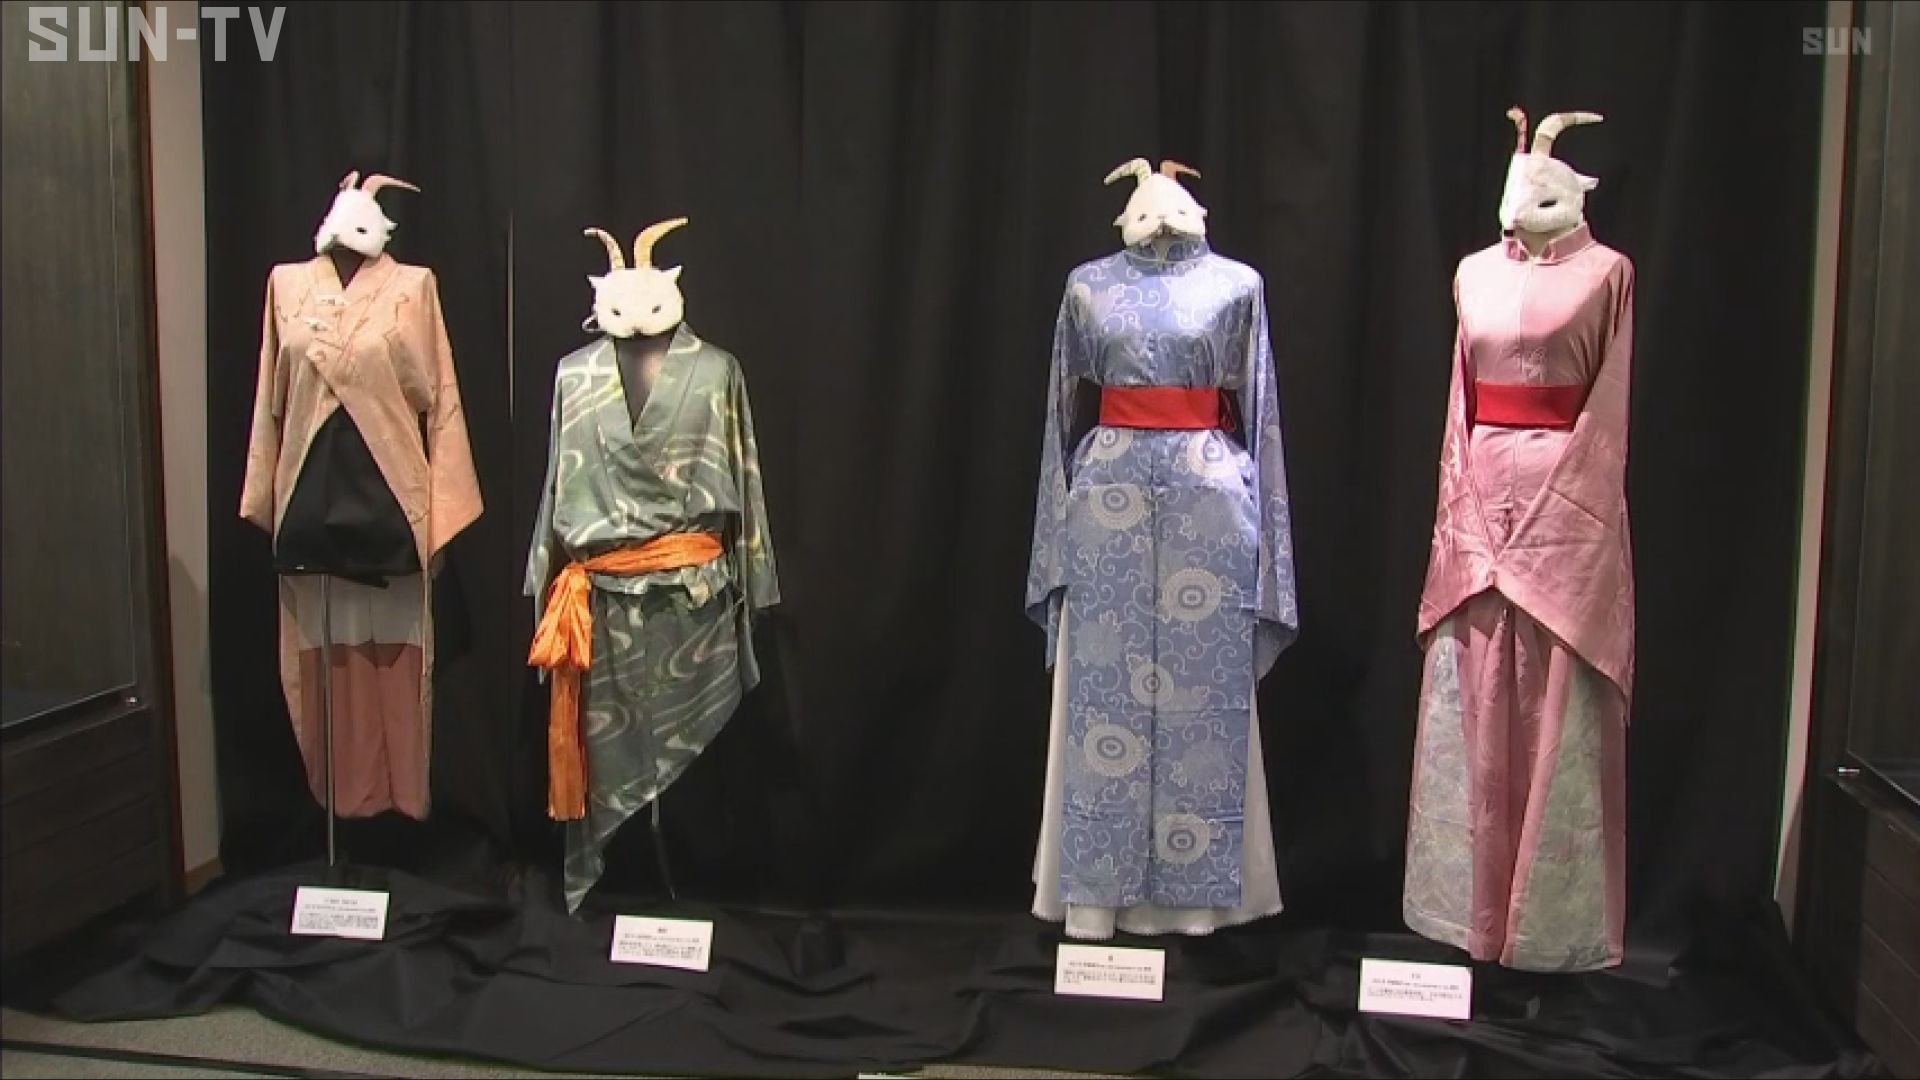 モンゴルと日本の文化の融合 豊岡市の博物館で創作衣装を展示 - サン